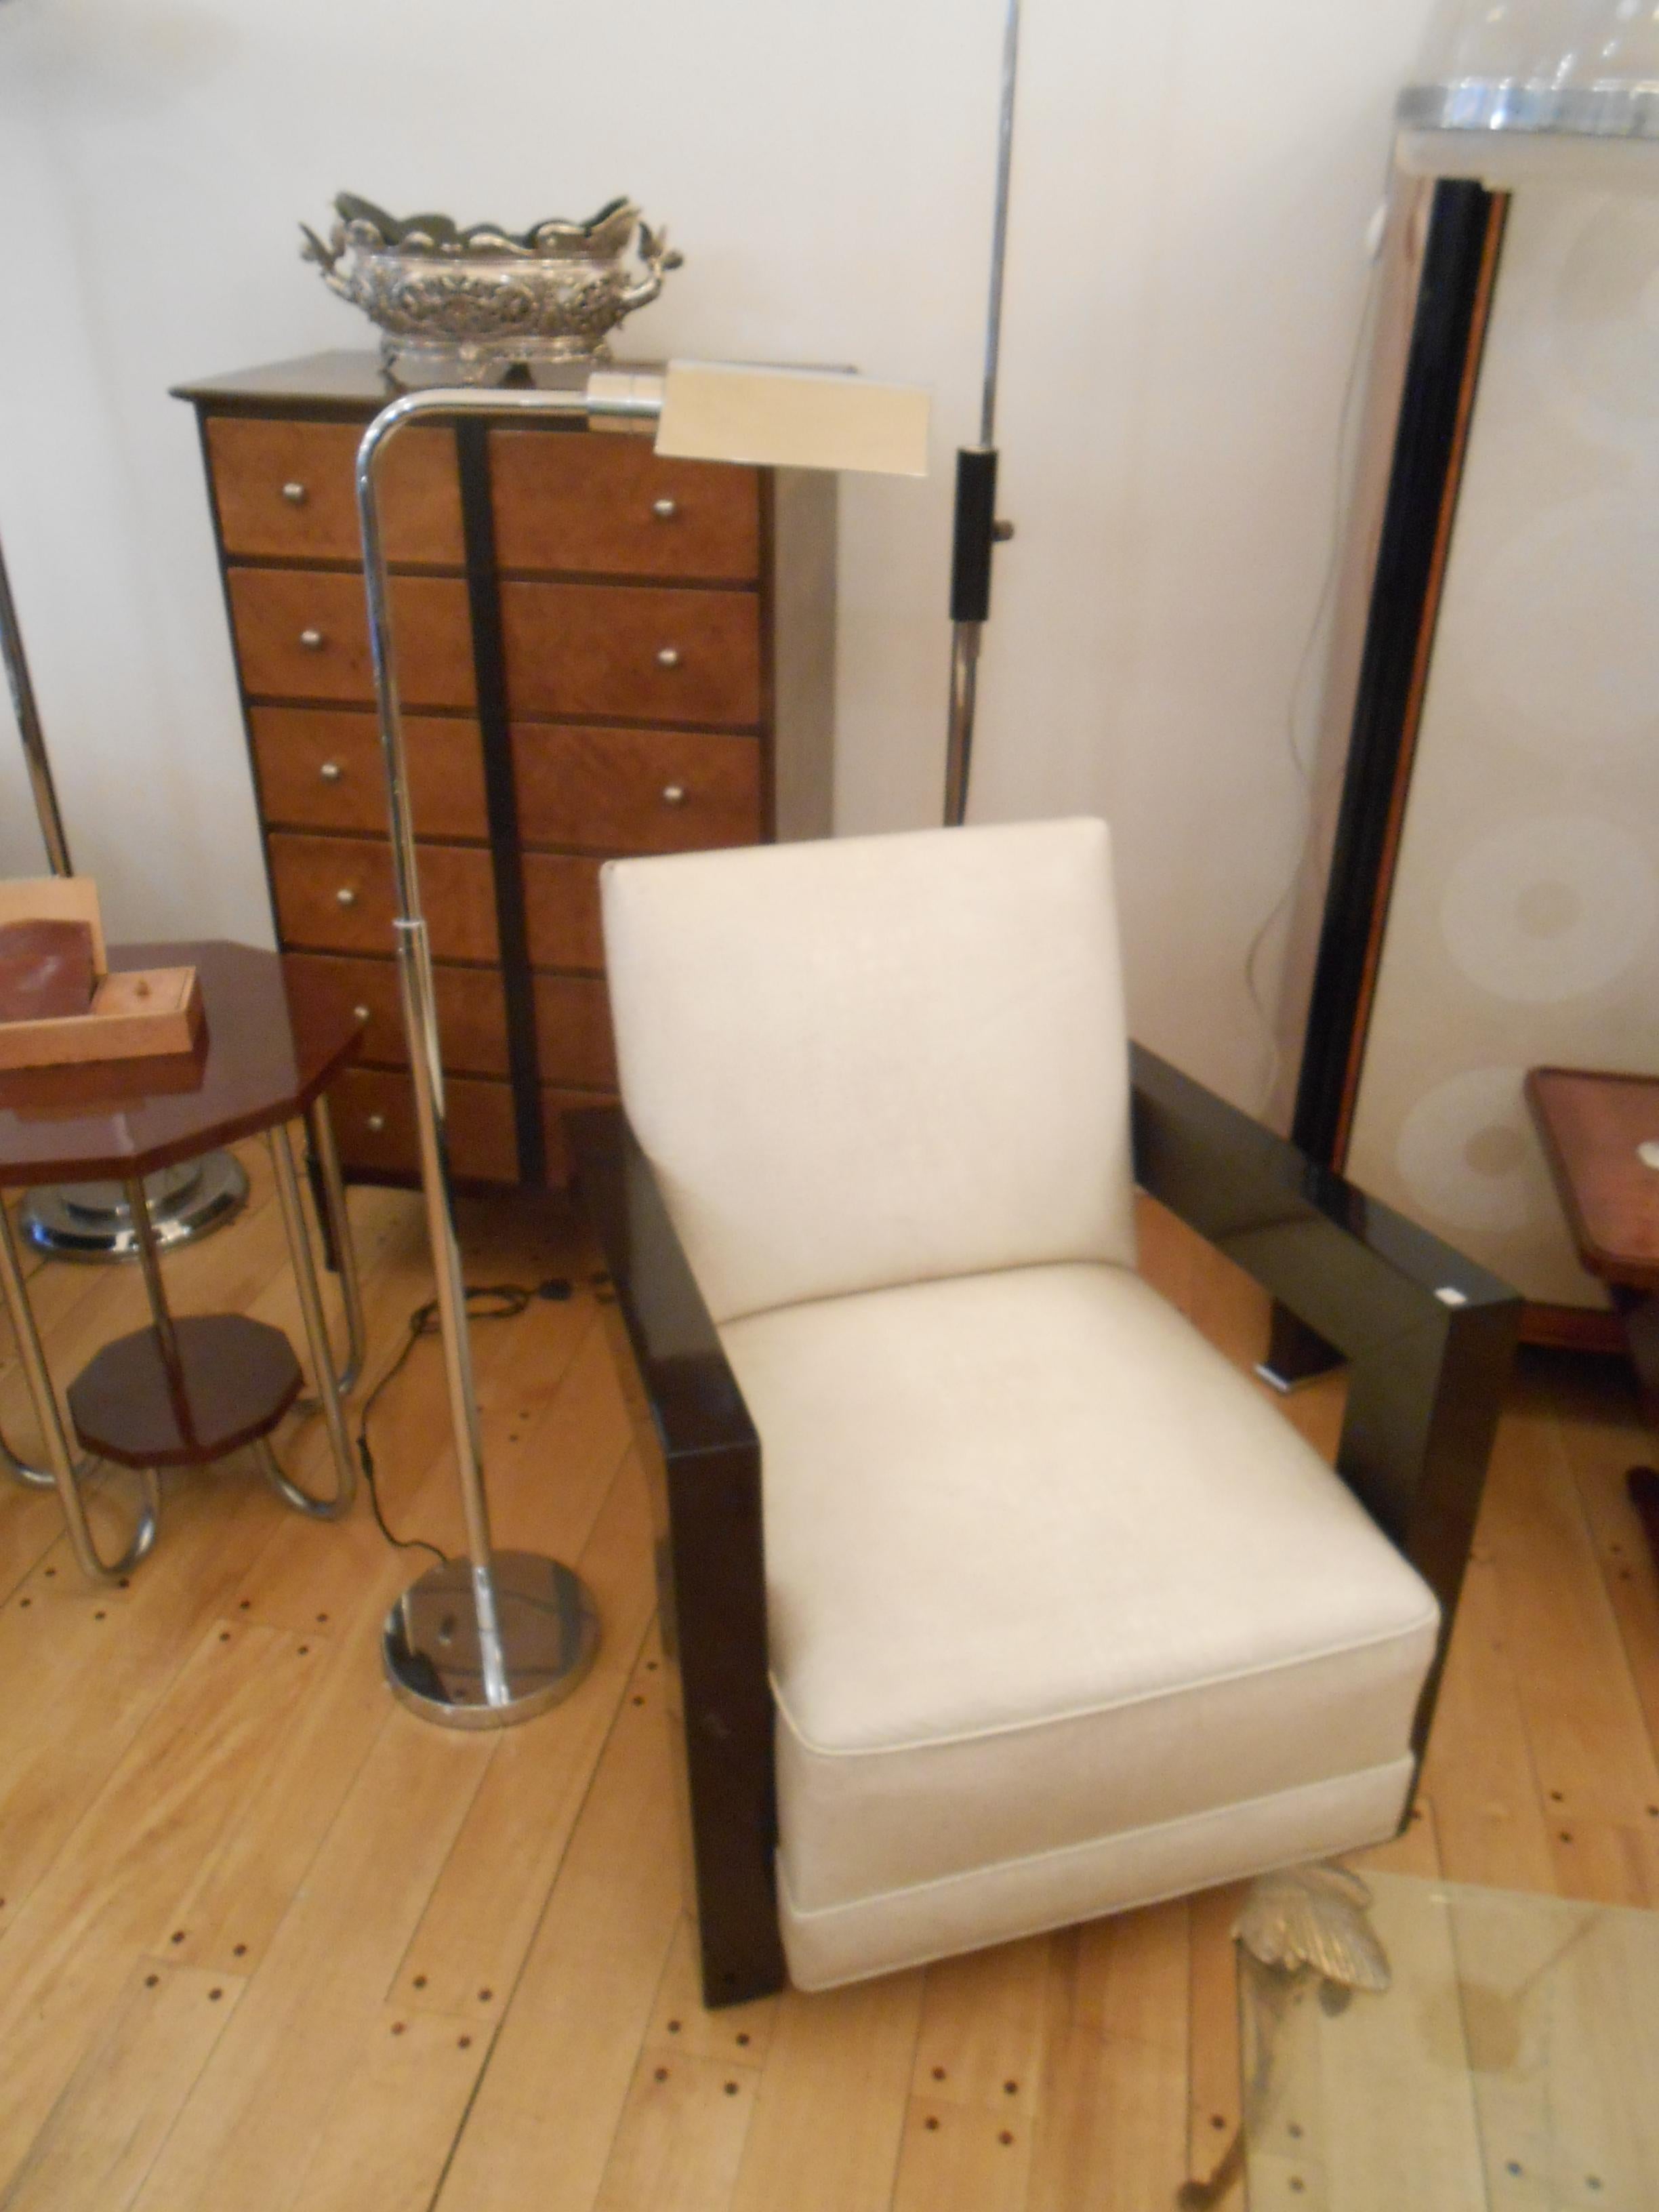 2 fauteuils Art Déco en cuir et bois

Année 1935
MATERIAL : Bois et cuir
Ils ont été retapissés il y a 10 ans.
Fauteuils élégants et sophistiqués.
Vous voulez vivre des années dorées, voici les fauteuils dont votre projet a besoin.
Nous sommes